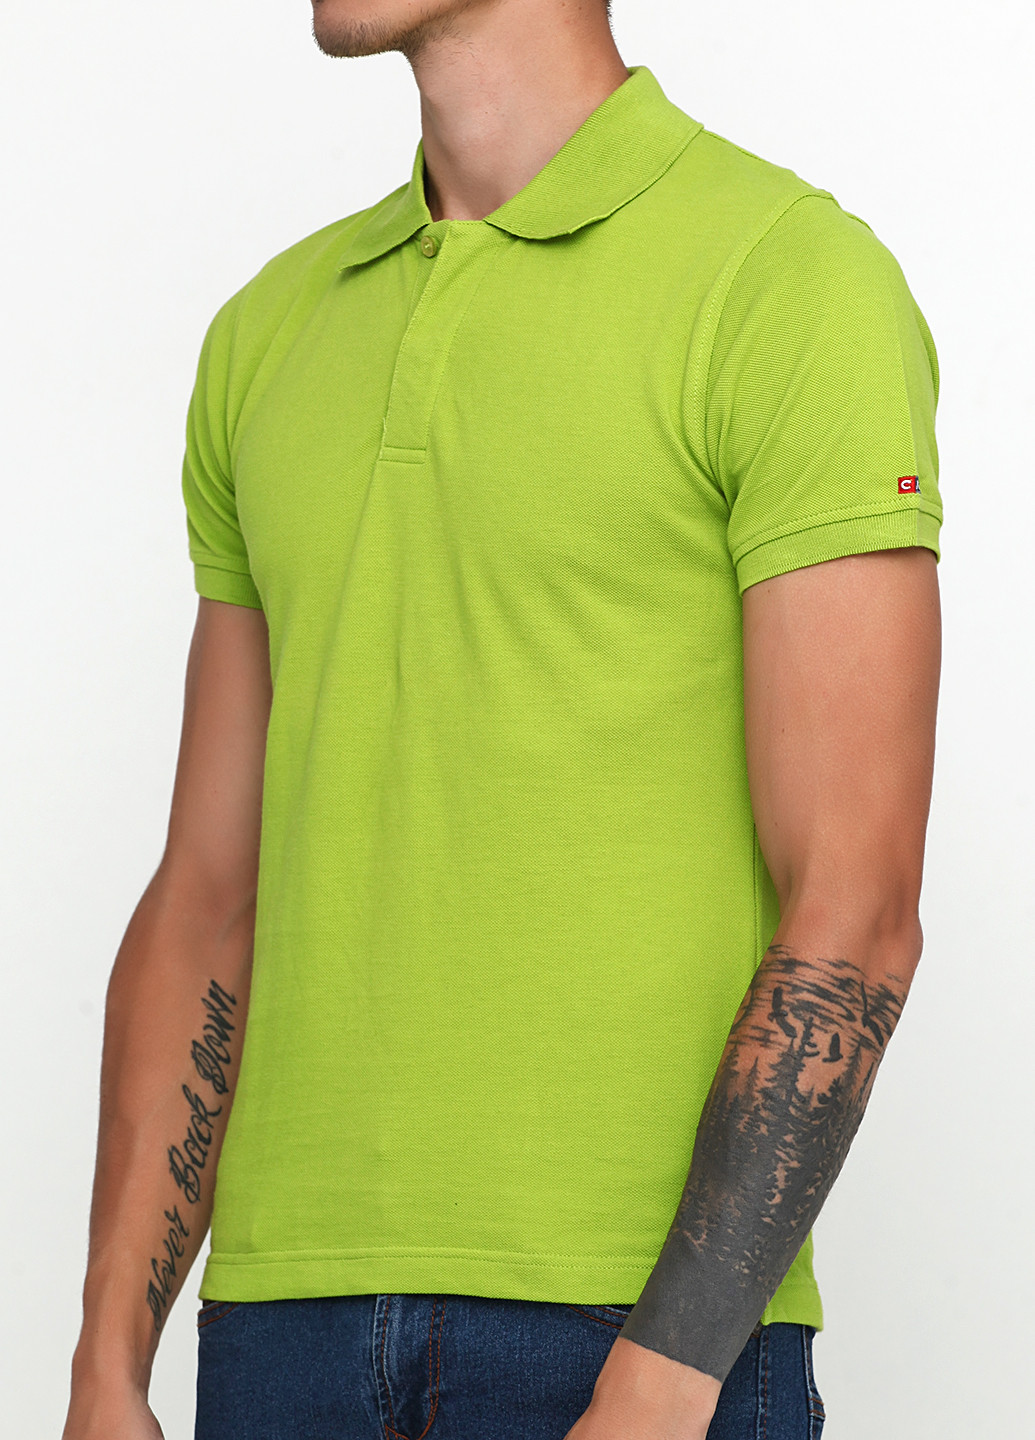 Салатовая футболка-поло для мужчин Castro однотонная